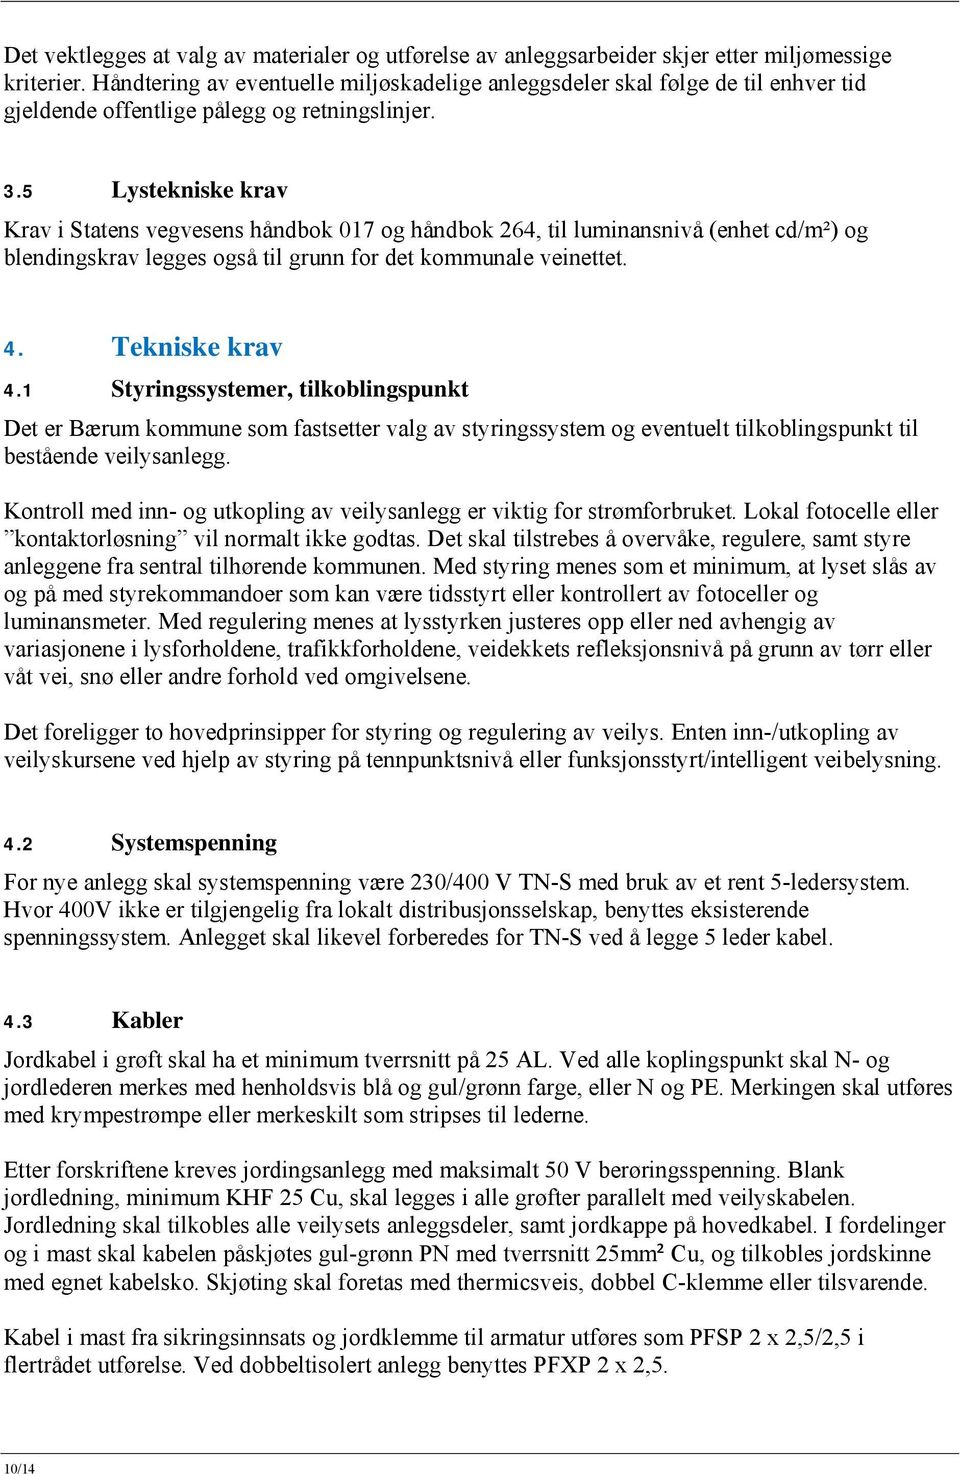 5 Lystekniske krav Krav i Statens vegvesens håndbok 017 og håndbok 264, til luminansnivå (enhet cd/m²) og blendingskrav legges også til grunn for det kommunale veinettet. 4. Tekniske krav 4.